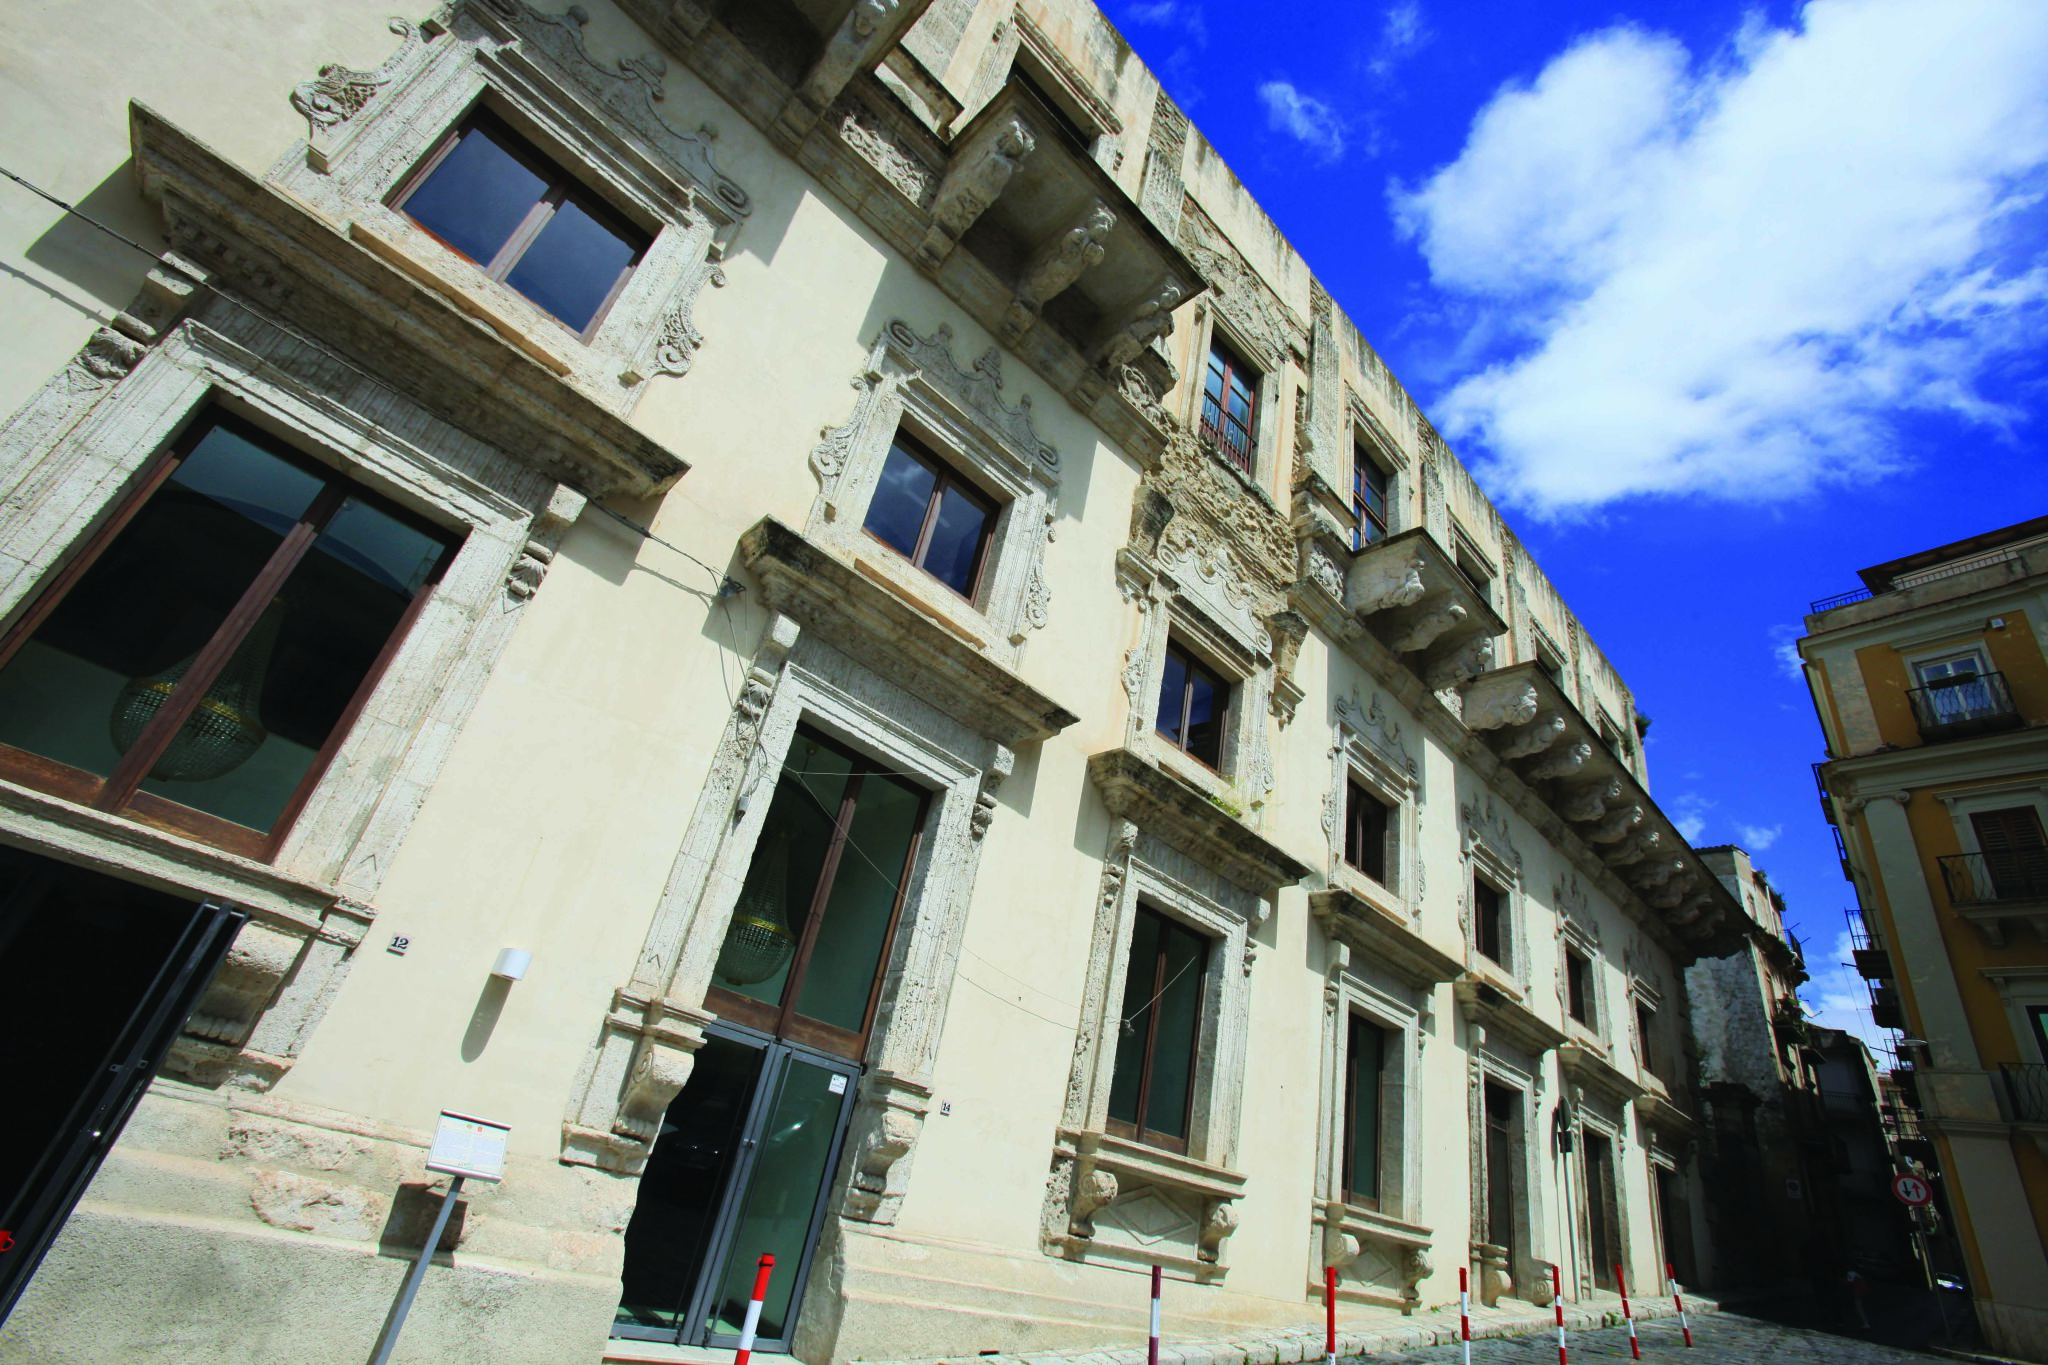 Museo a Caltanissetta - Palazzo Moncada